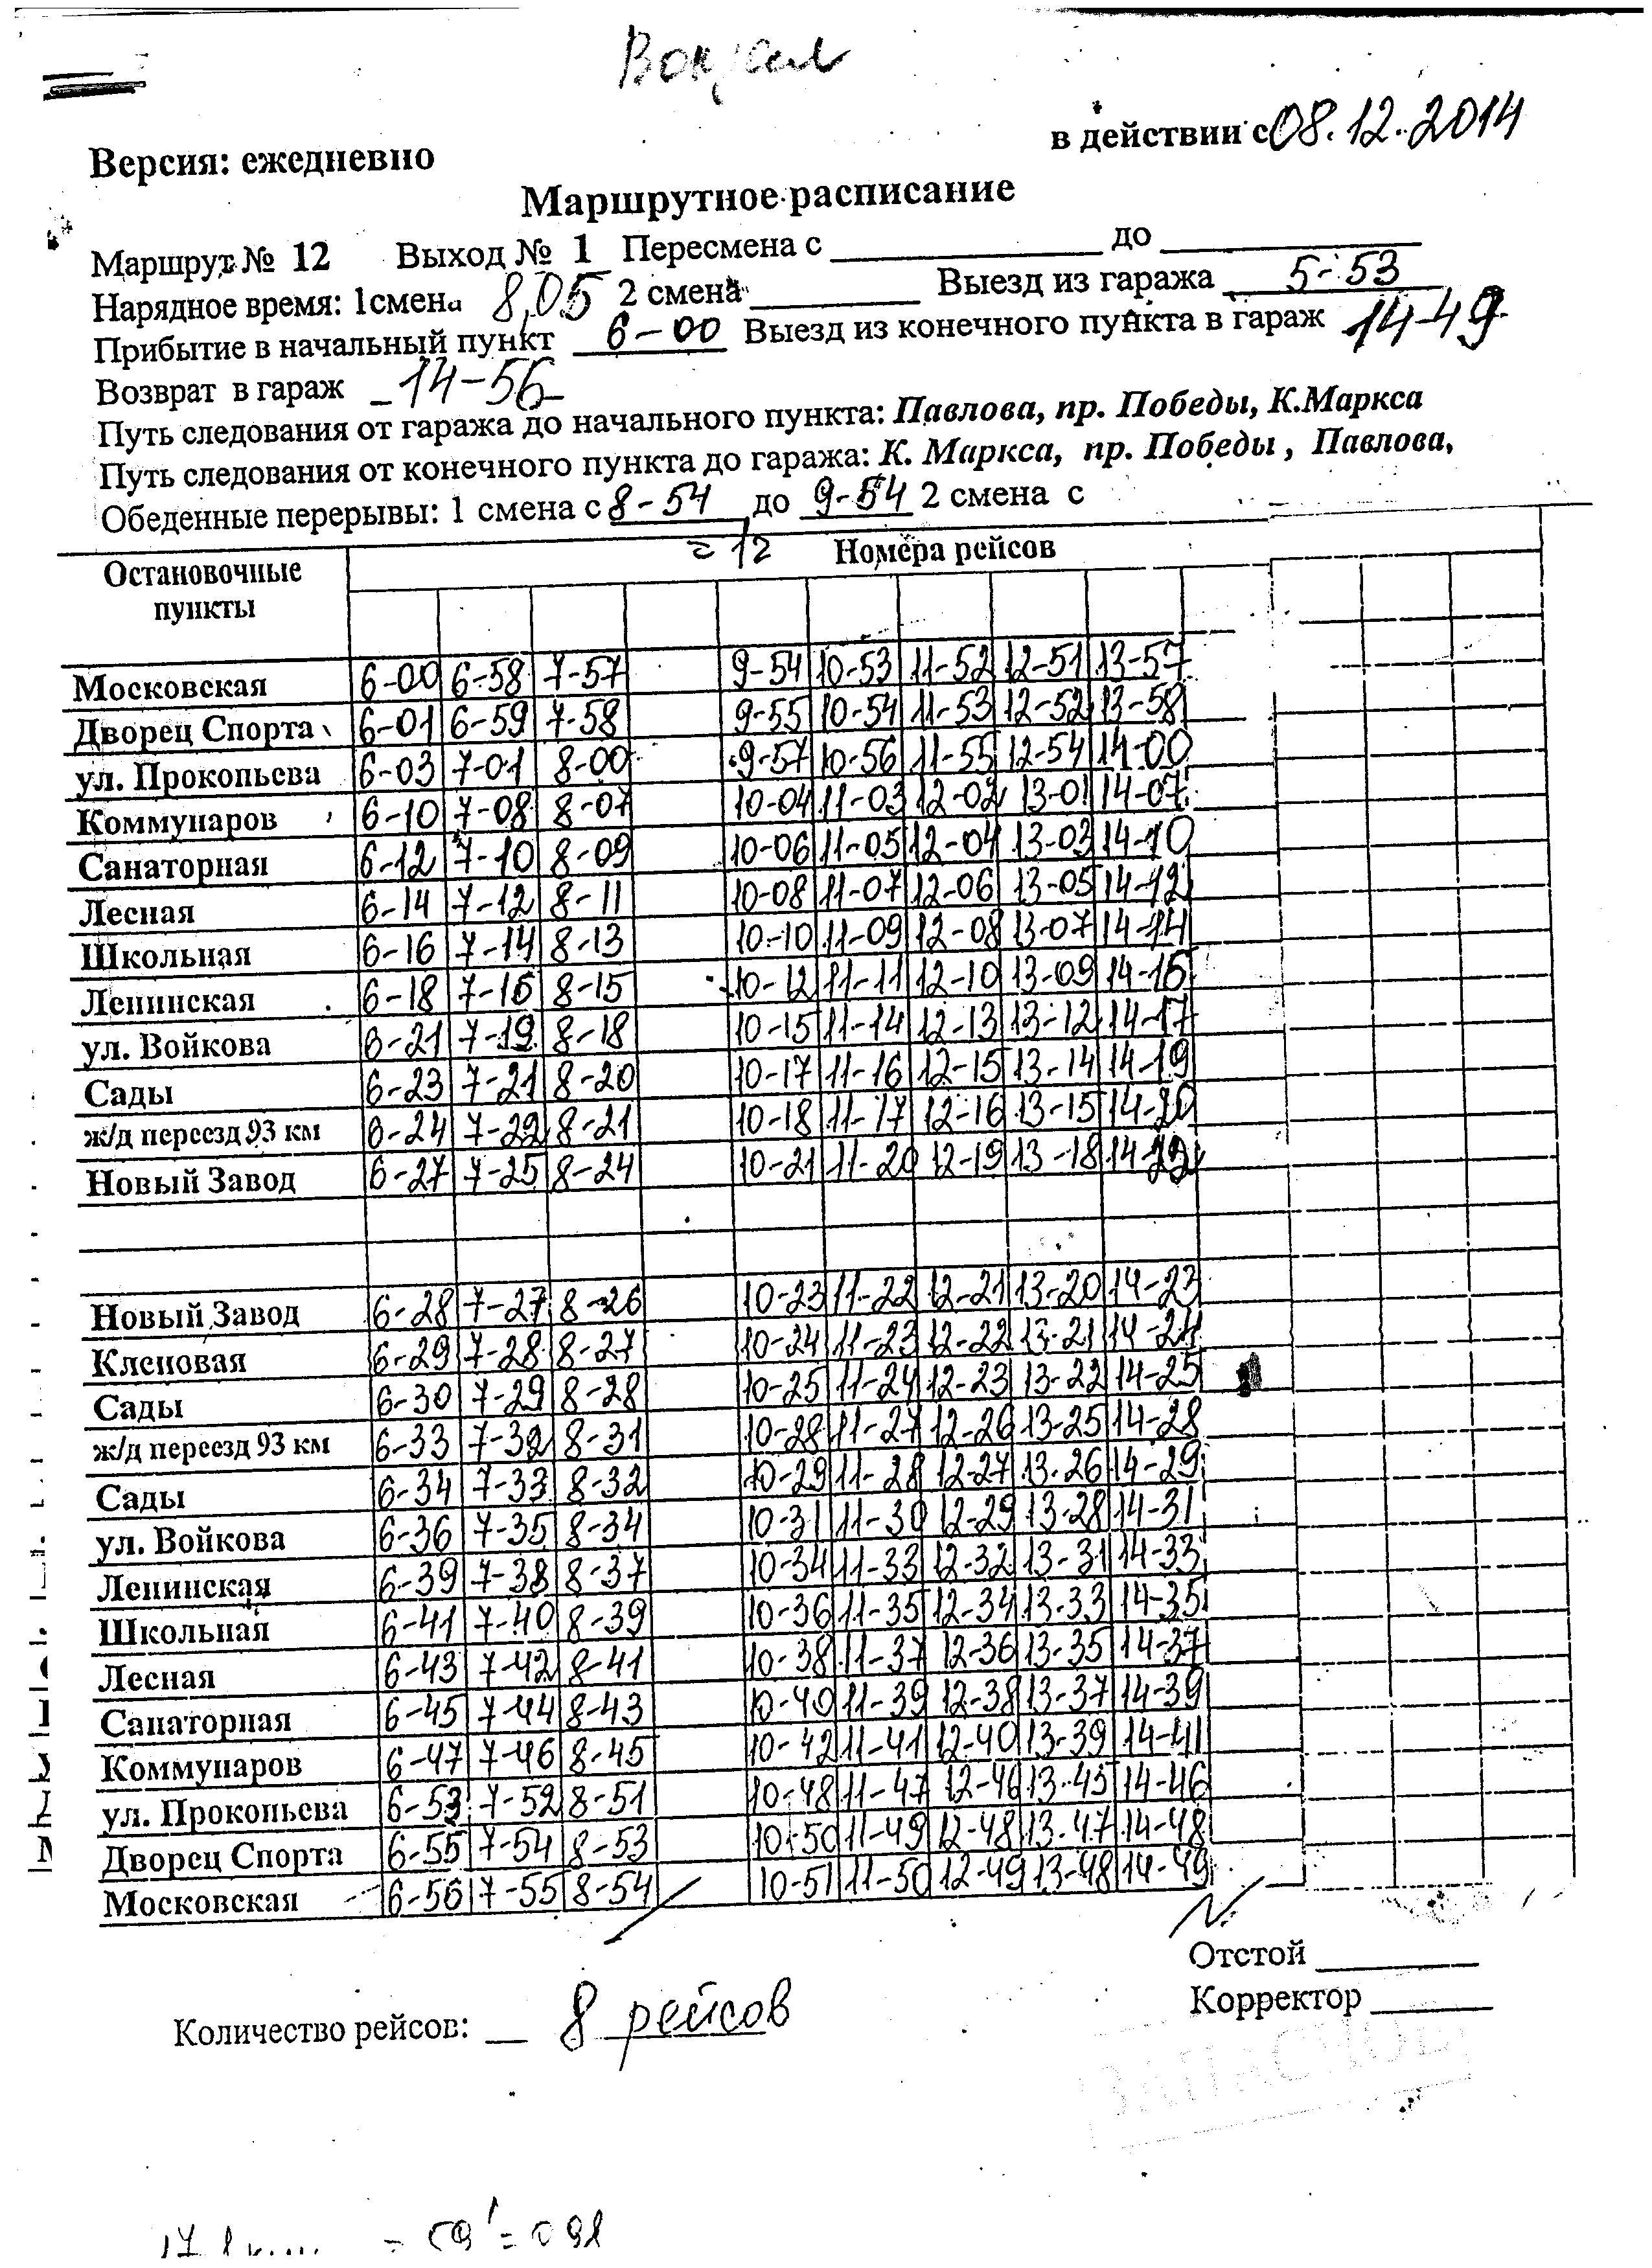 Расписание автобусов Копейск 10.